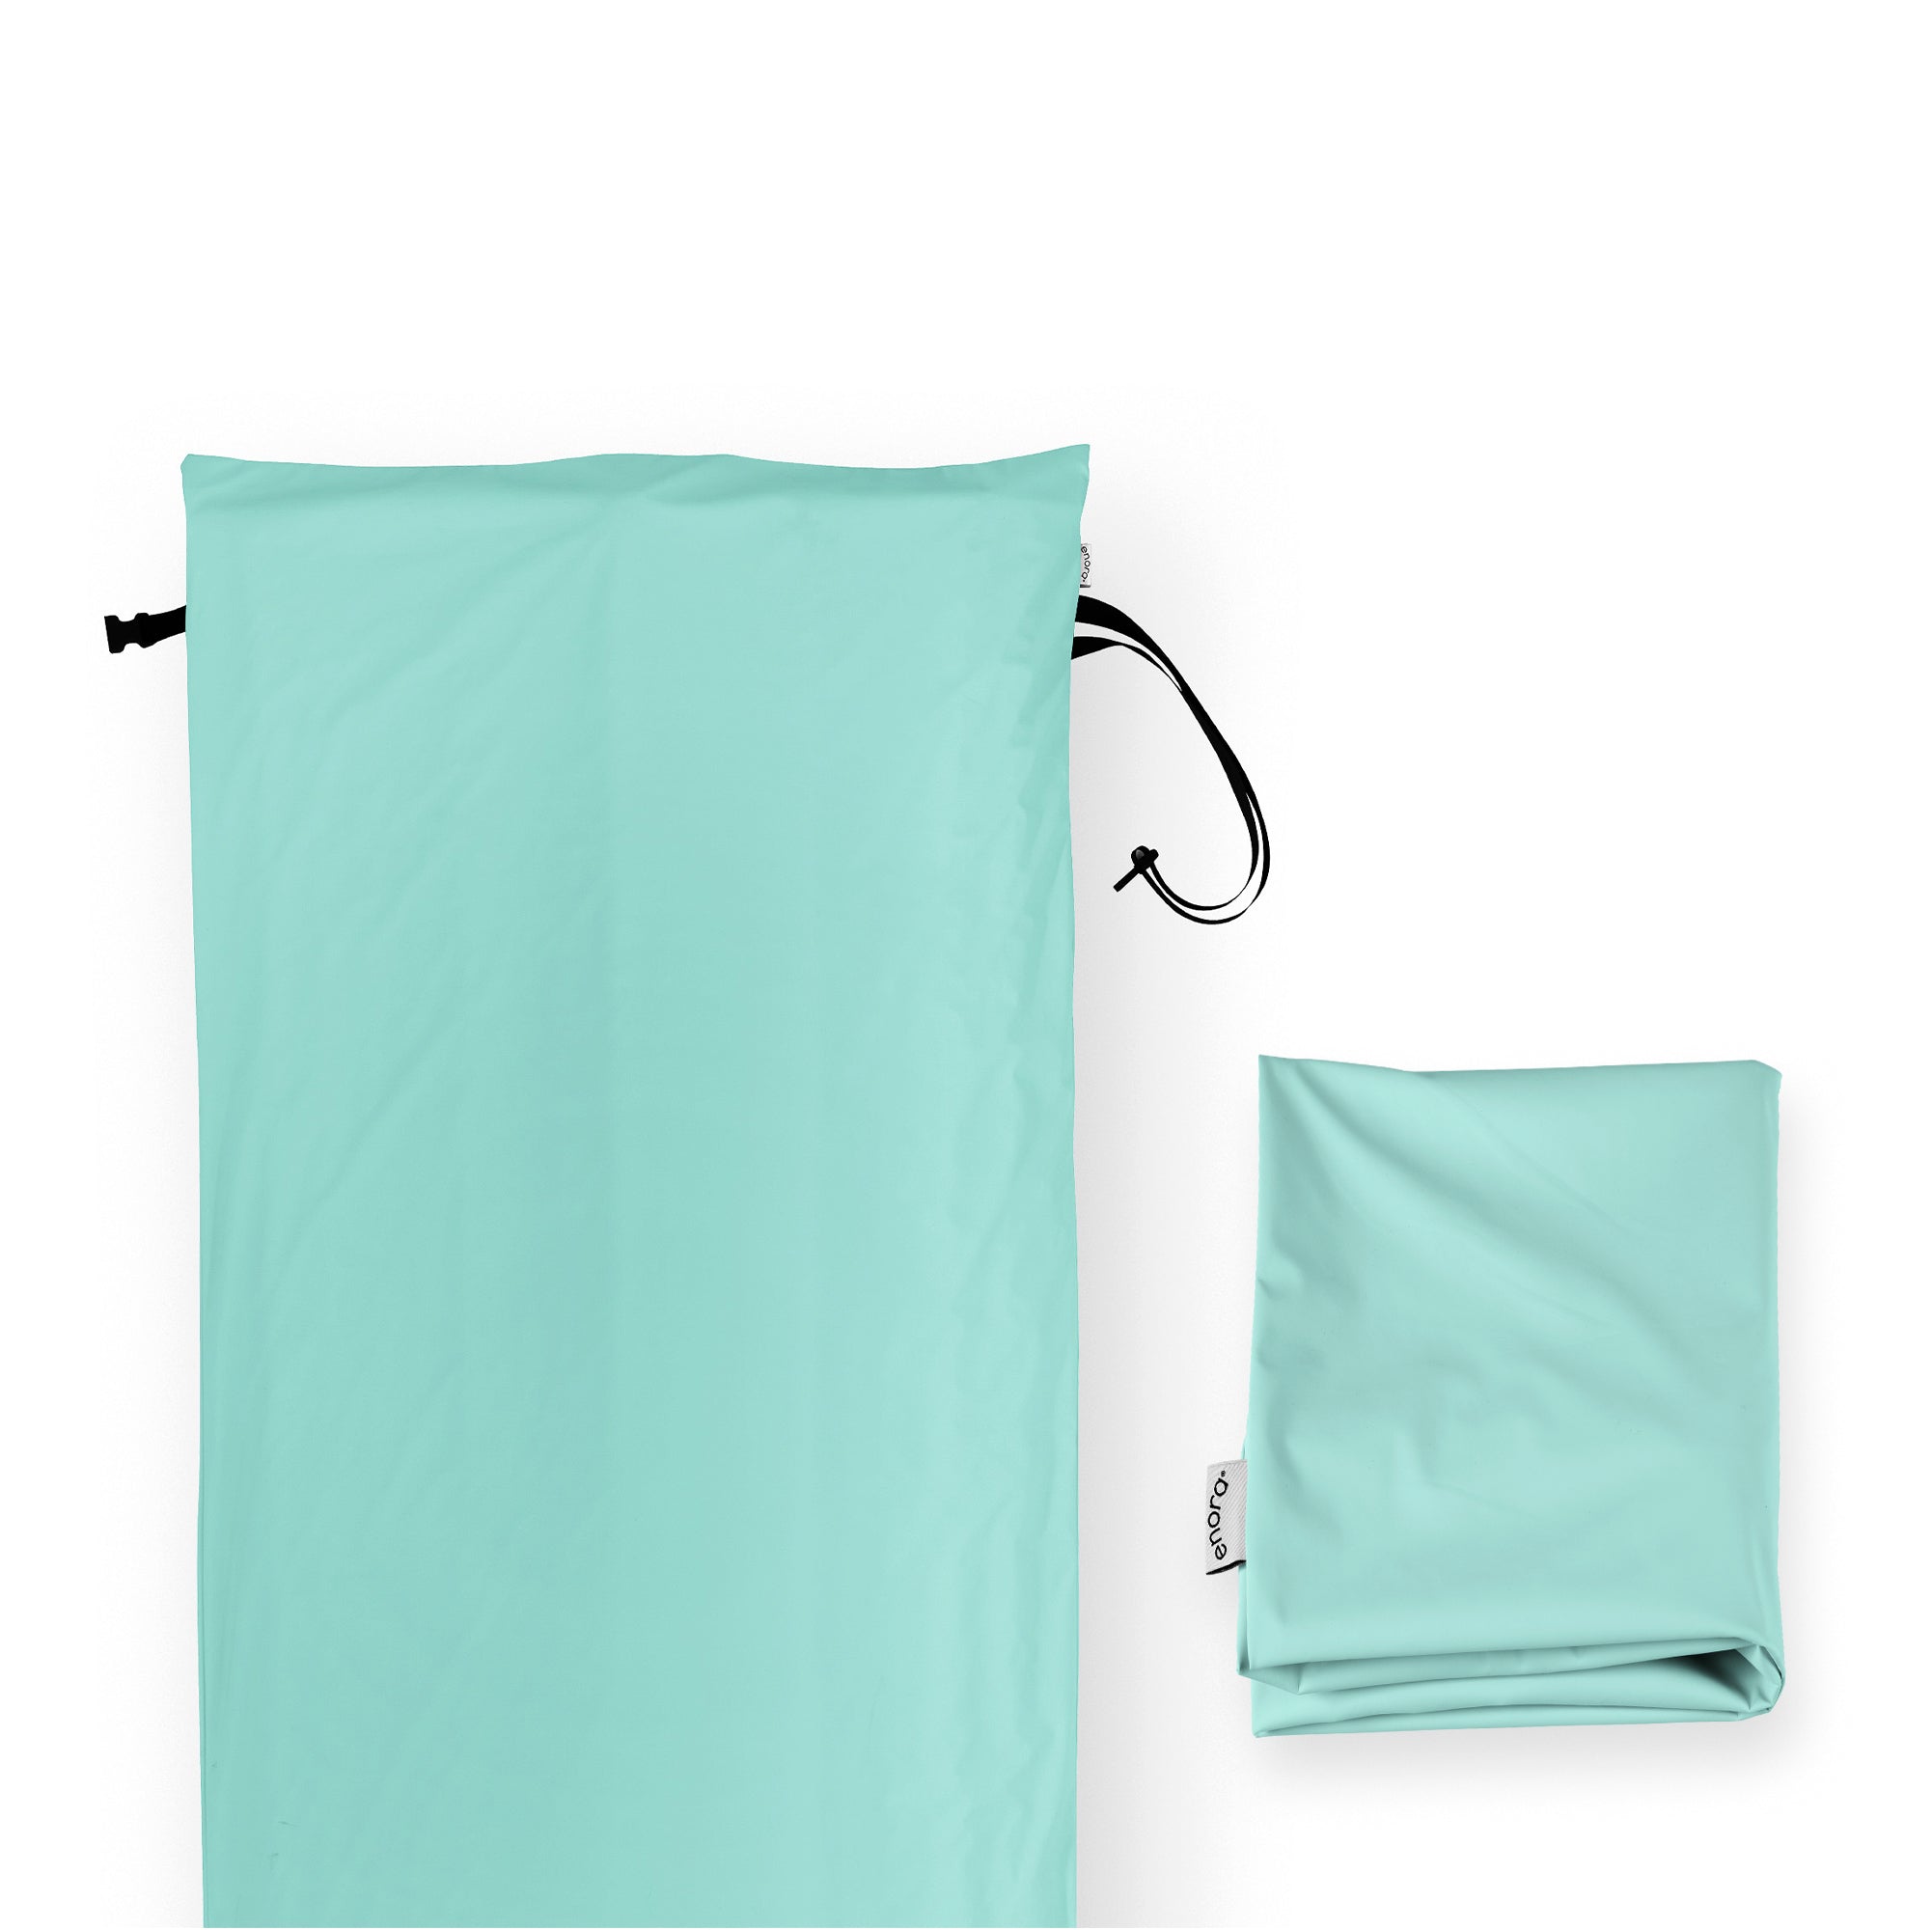 Enora® Air Sleeper Dual Cover Set